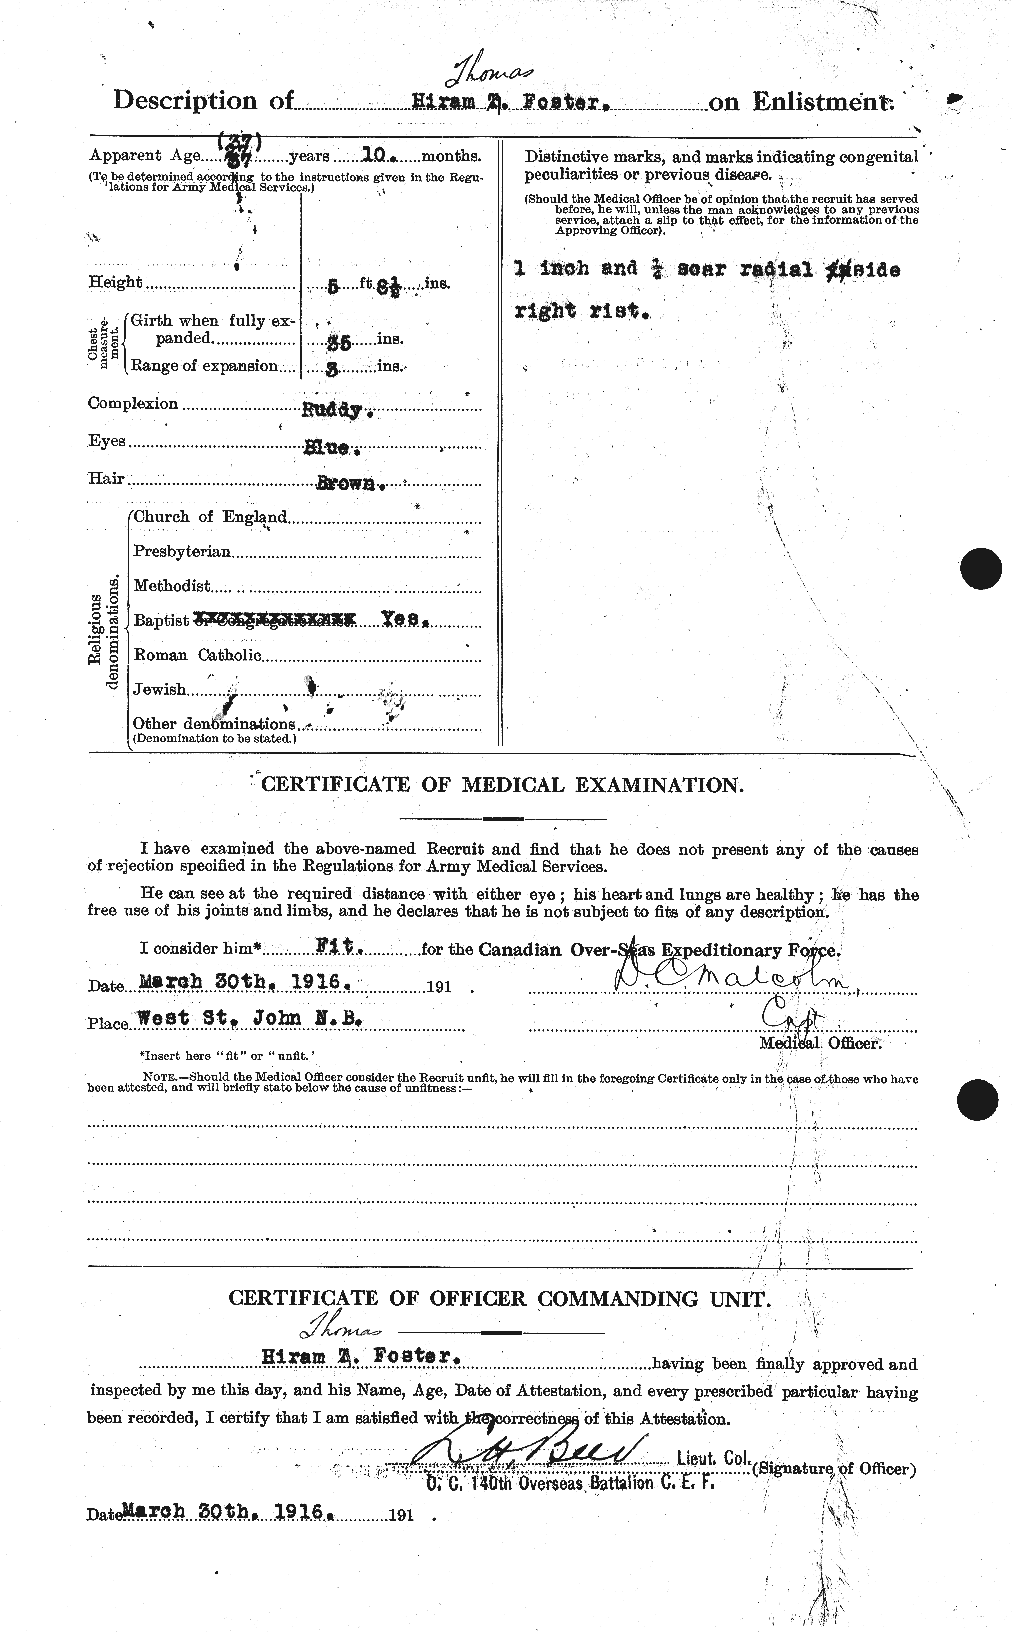 Dossiers du Personnel de la Première Guerre mondiale - CEC 333264b